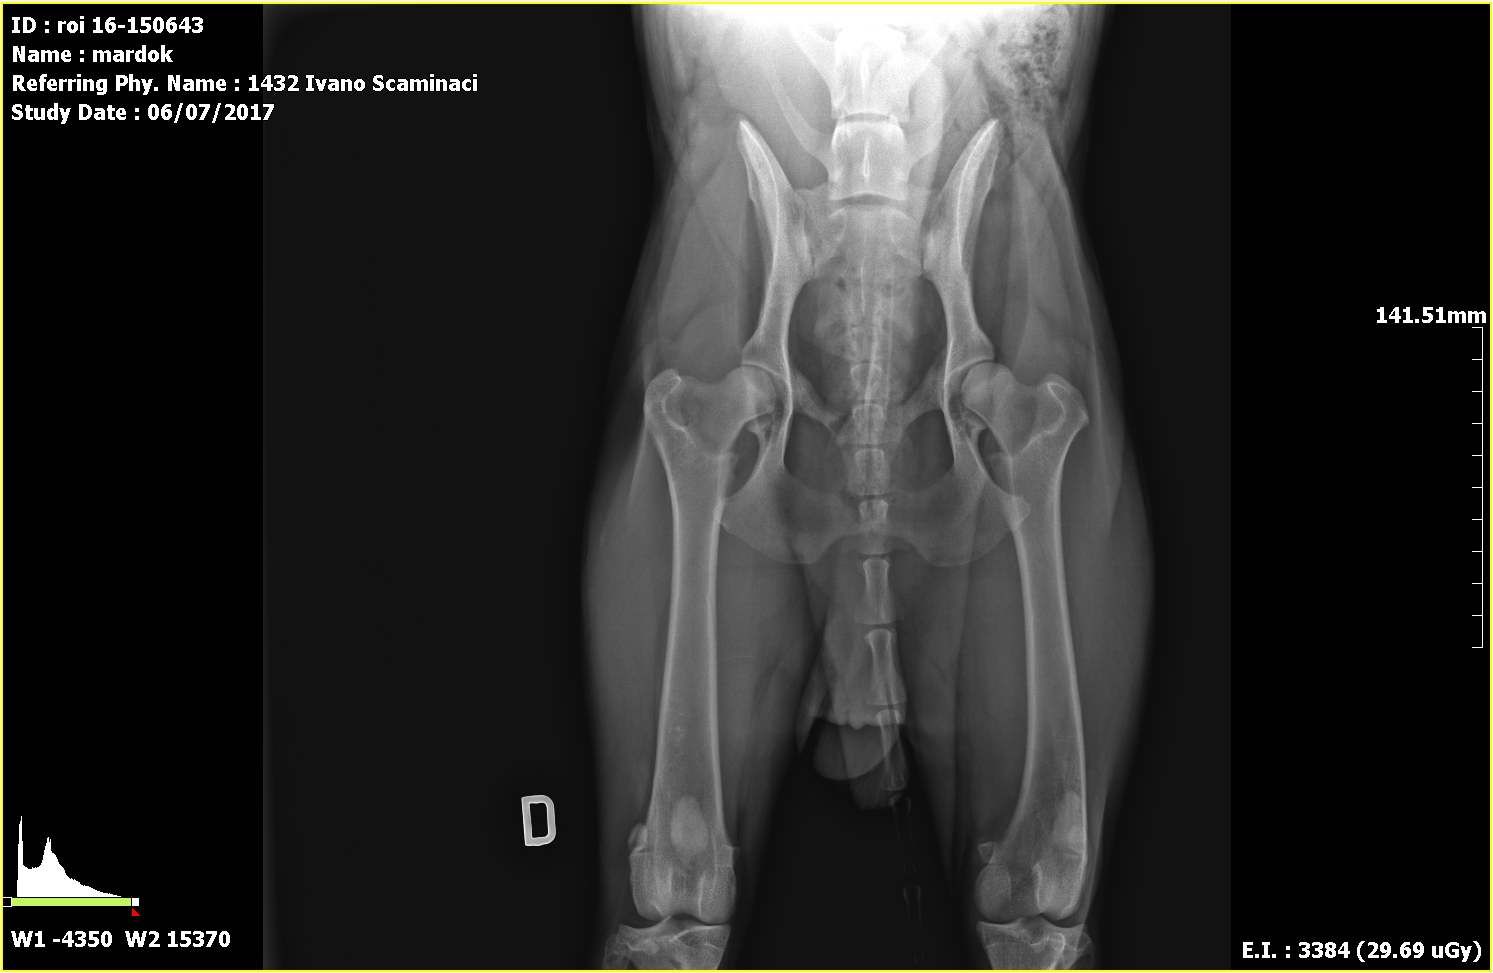 Radiografie ufficiali per la ricerca della displasia dell'anca e del gomito eseguite presso il centro veterinario San Filippo - Agira (ENNA)